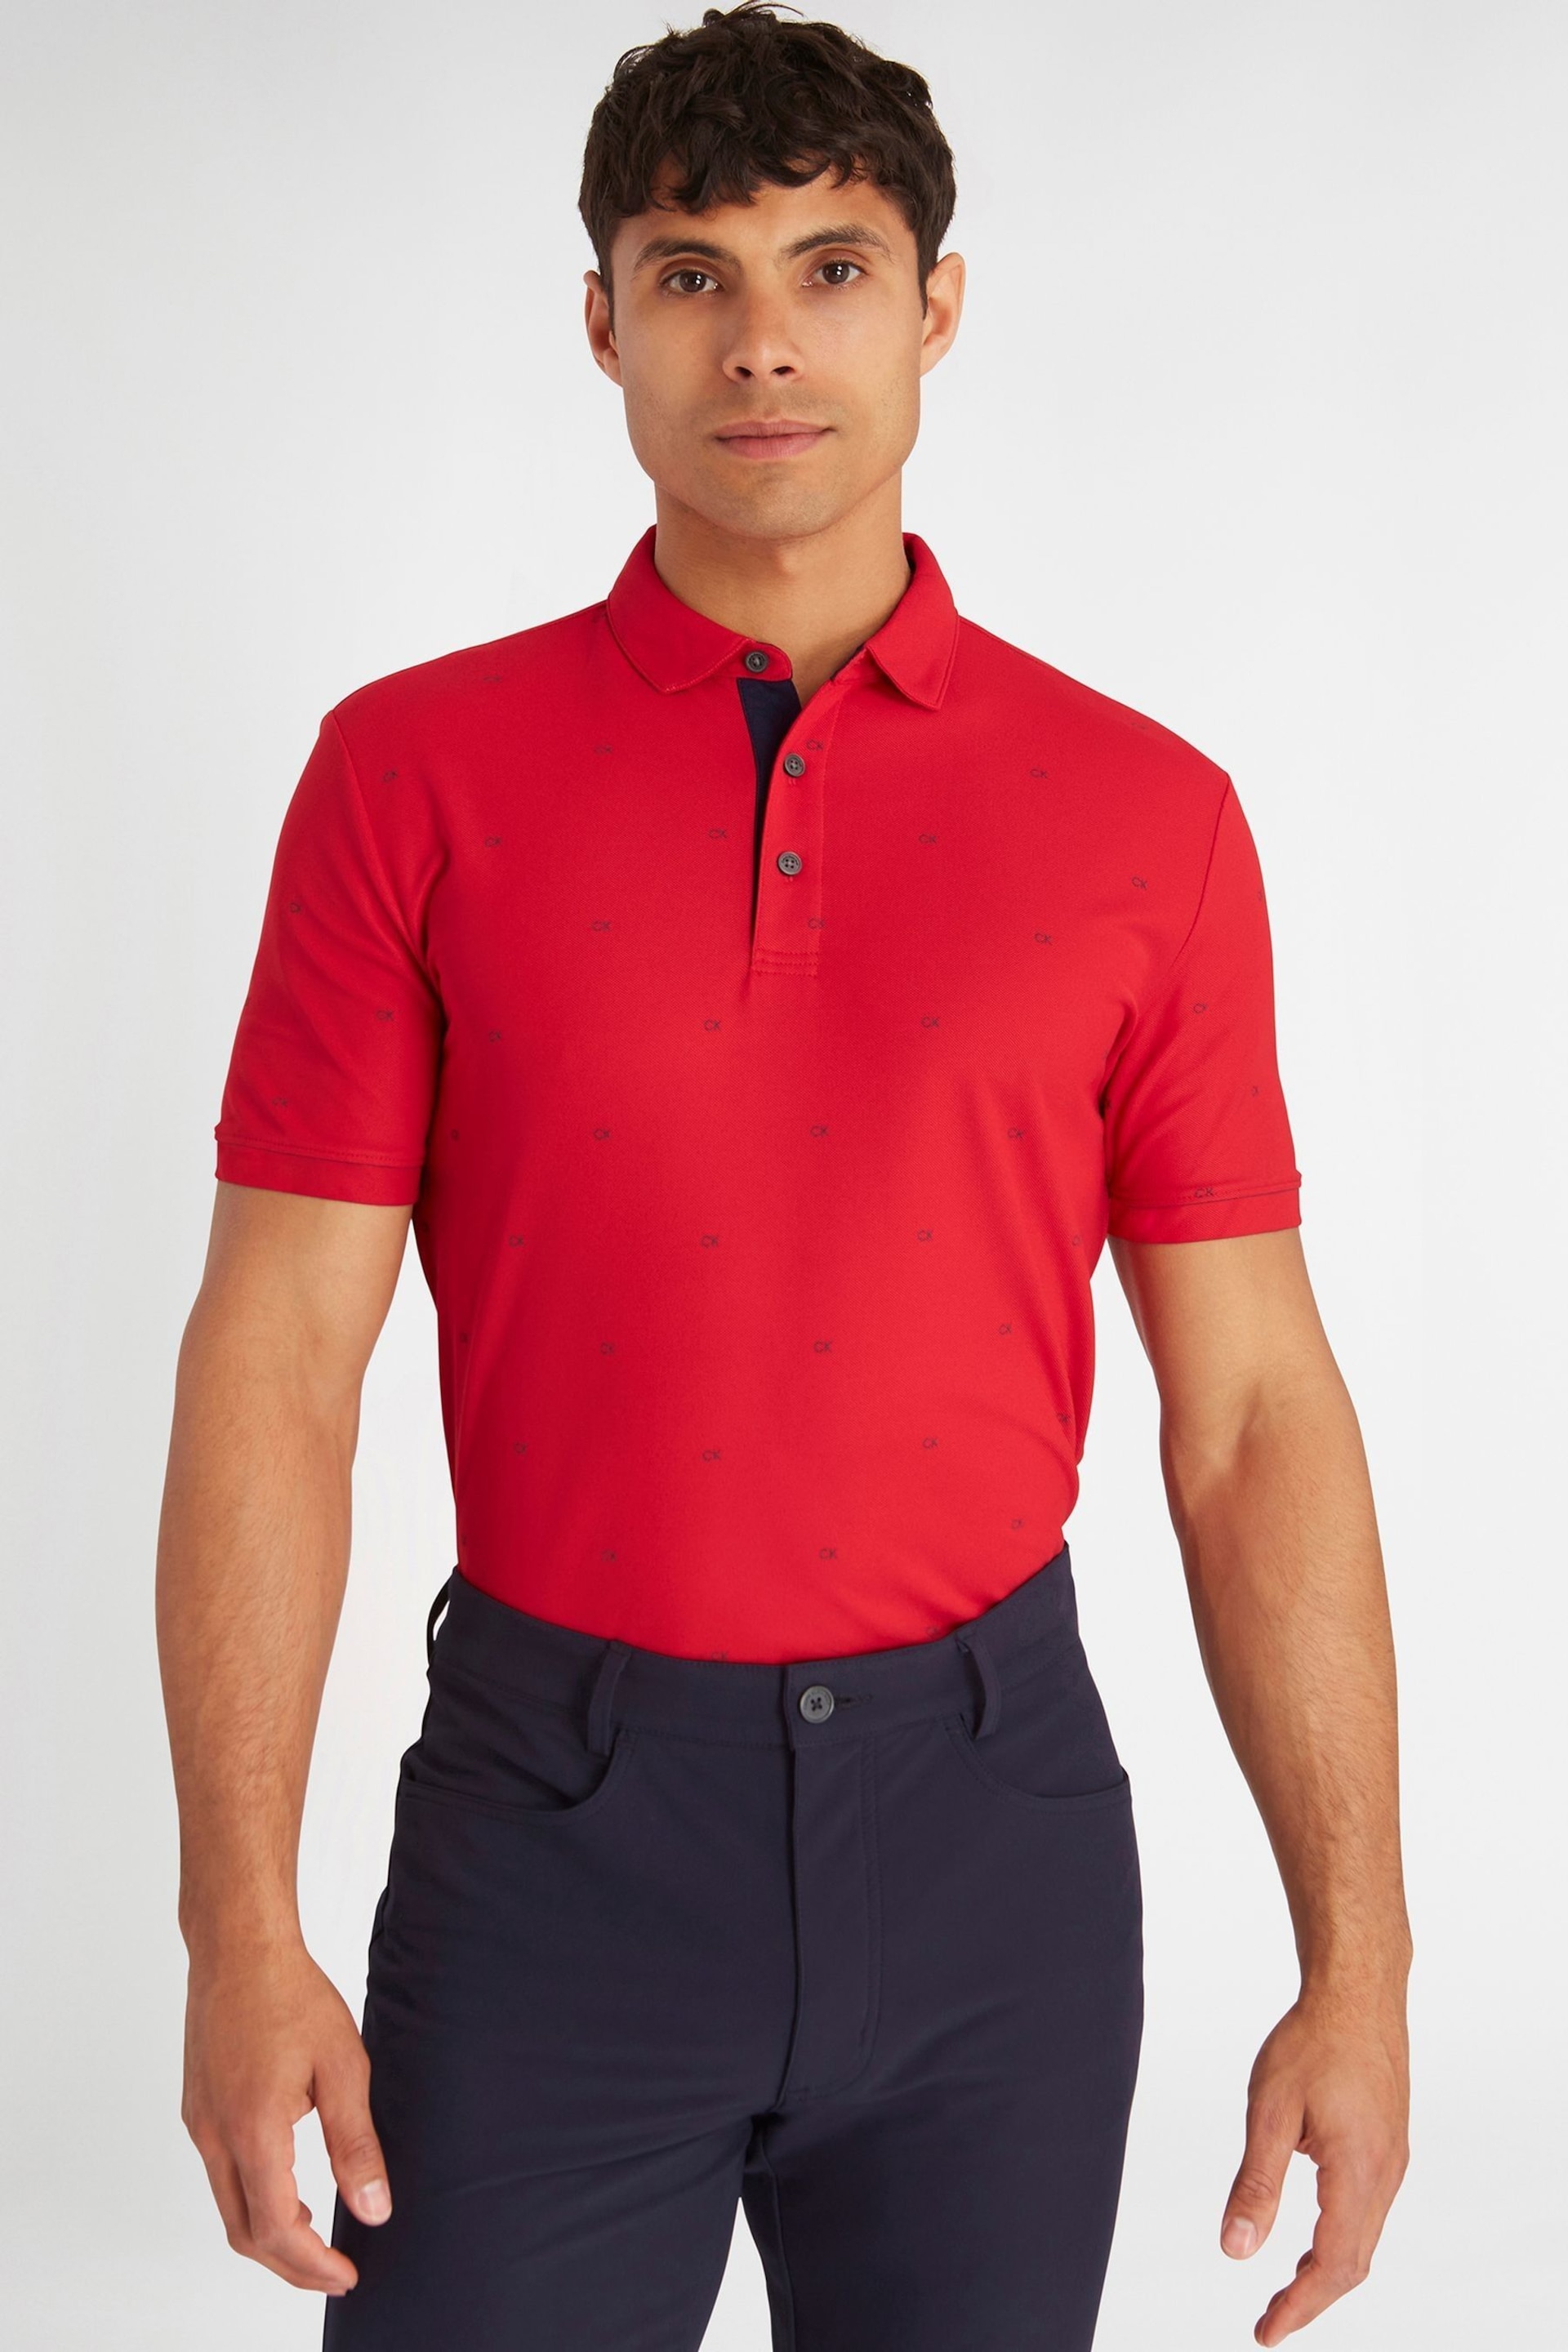 Calvin Klein Golf Blue Monogram Polo Shirt - Image 1 of 8